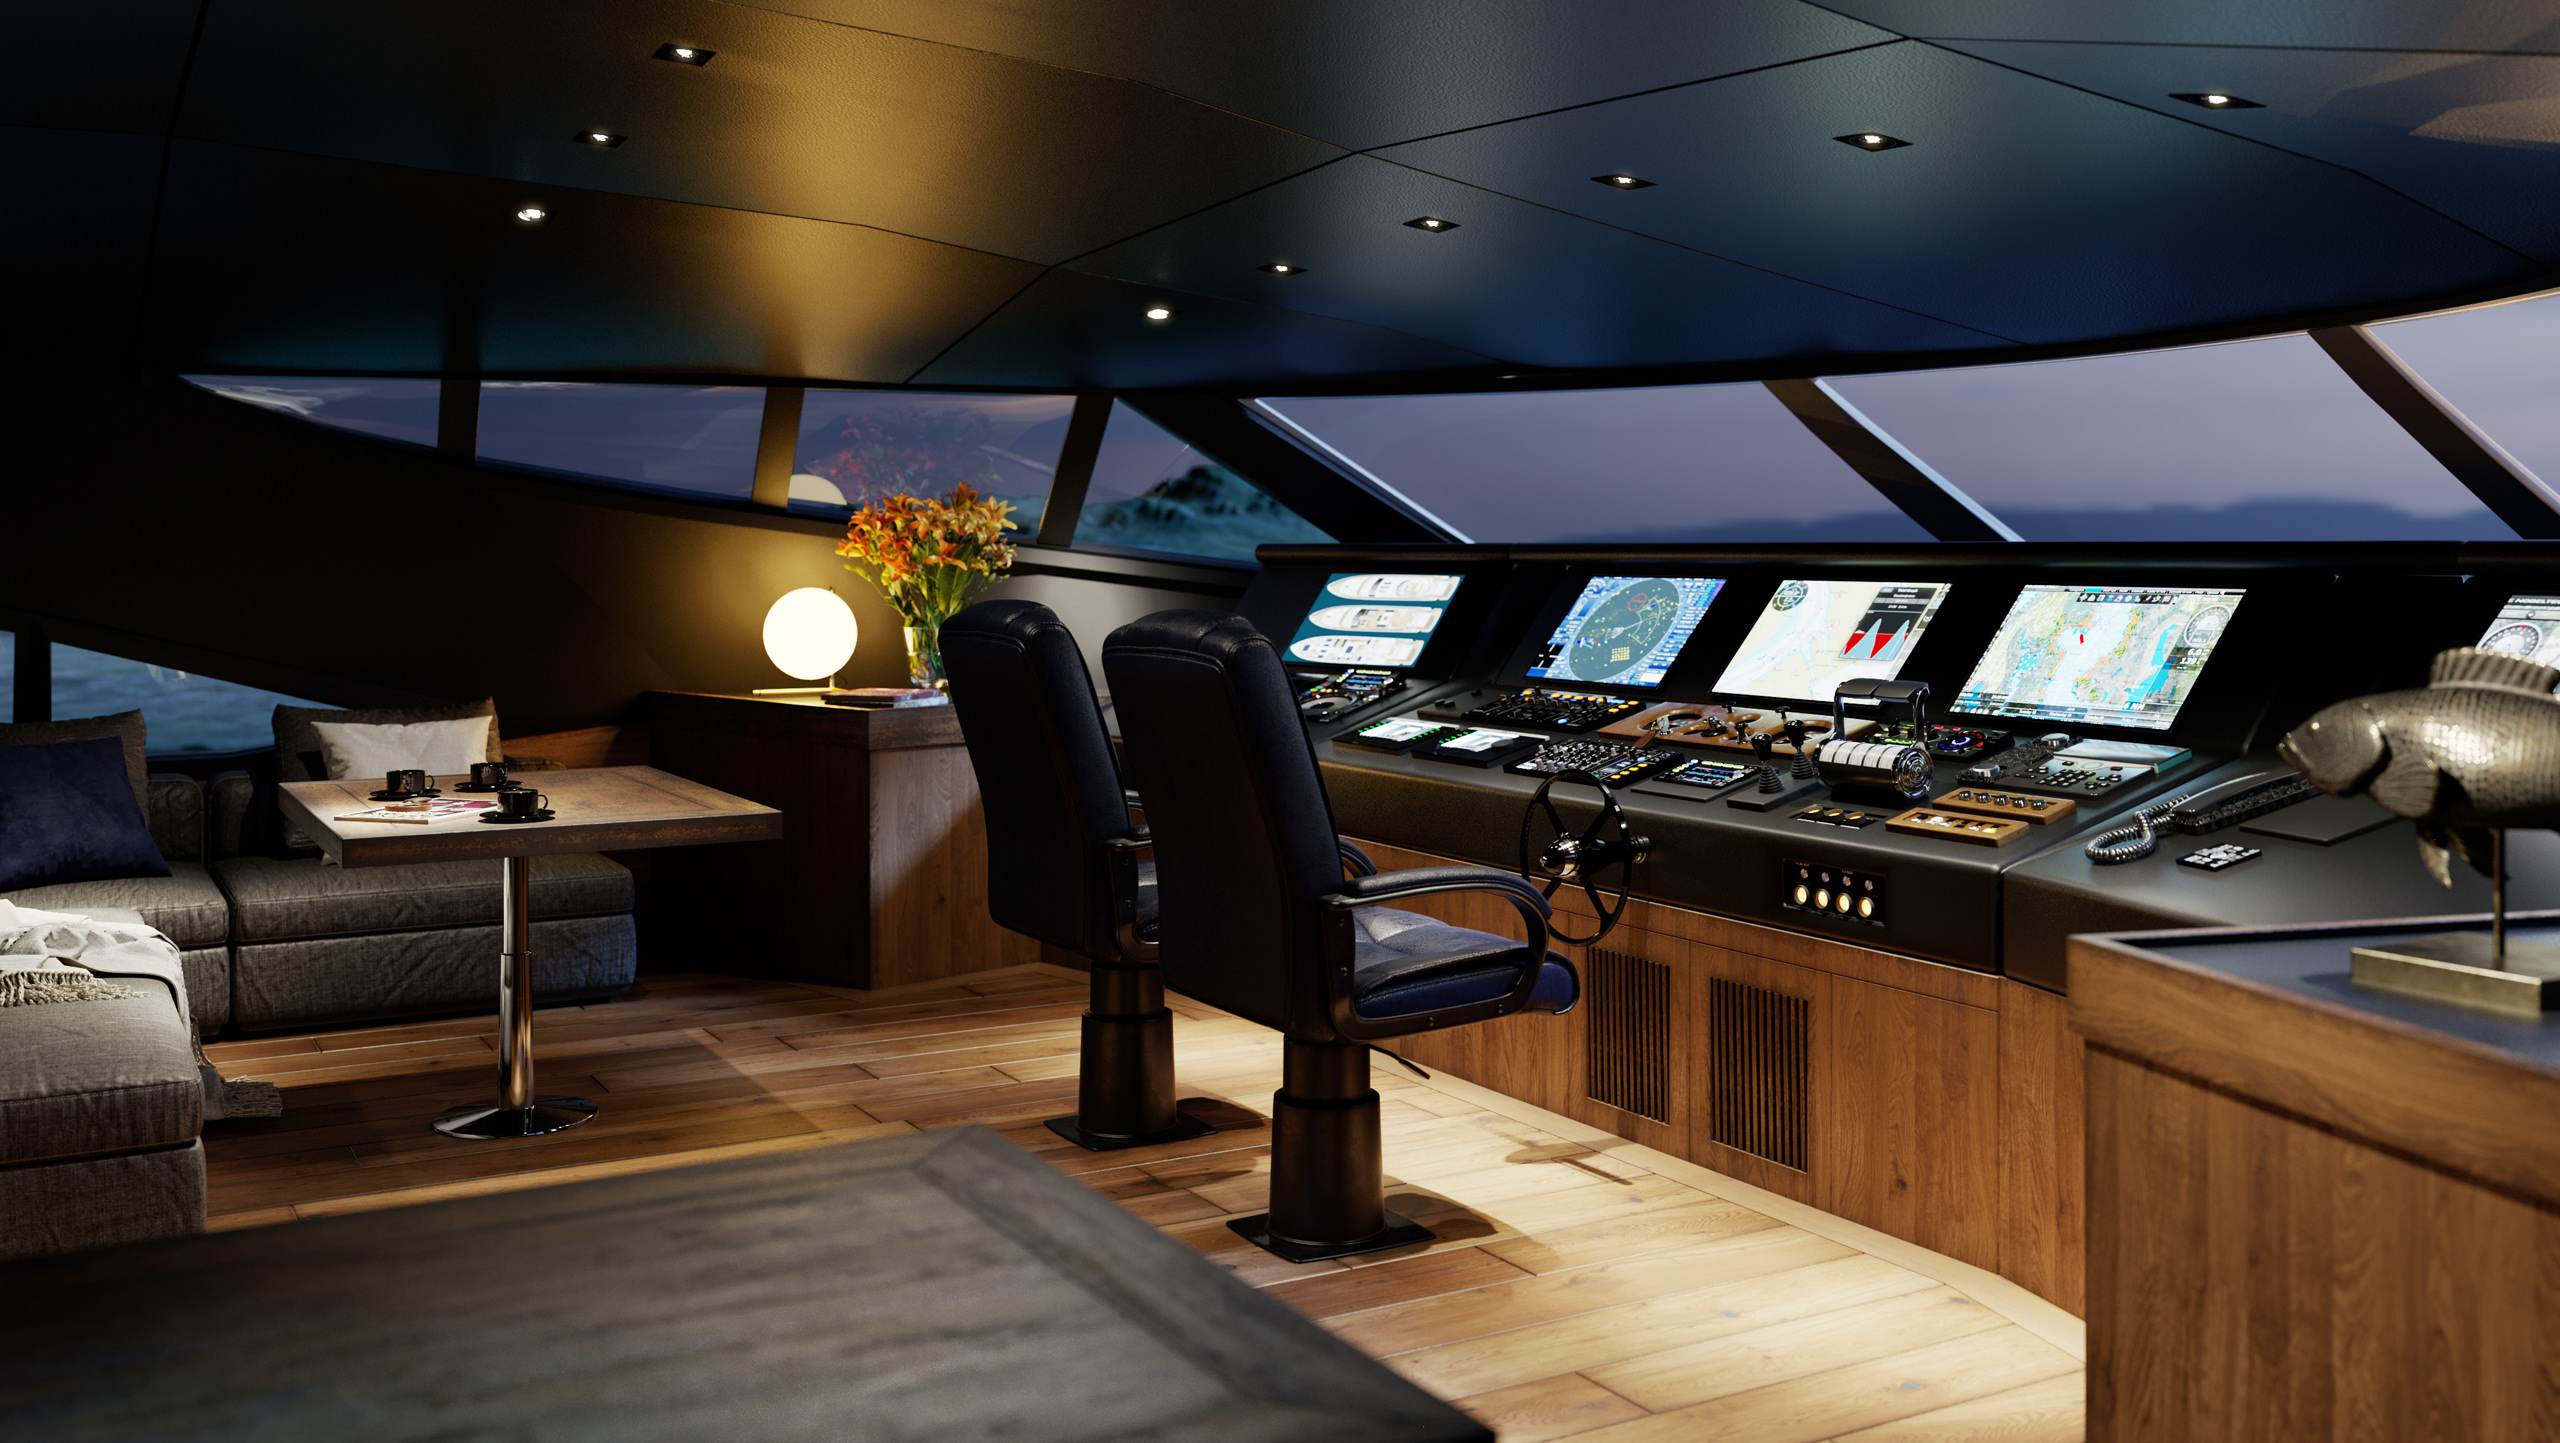 Rendu 3D du cockpit du capitaine d'un yacht avec tous les contrôleurs, cartes et schémas de bateau sur divers écrans à côté d'un canapé et d'une table basse, visualisé au crépuscule avec la lumière artificielle de la cabine allumée